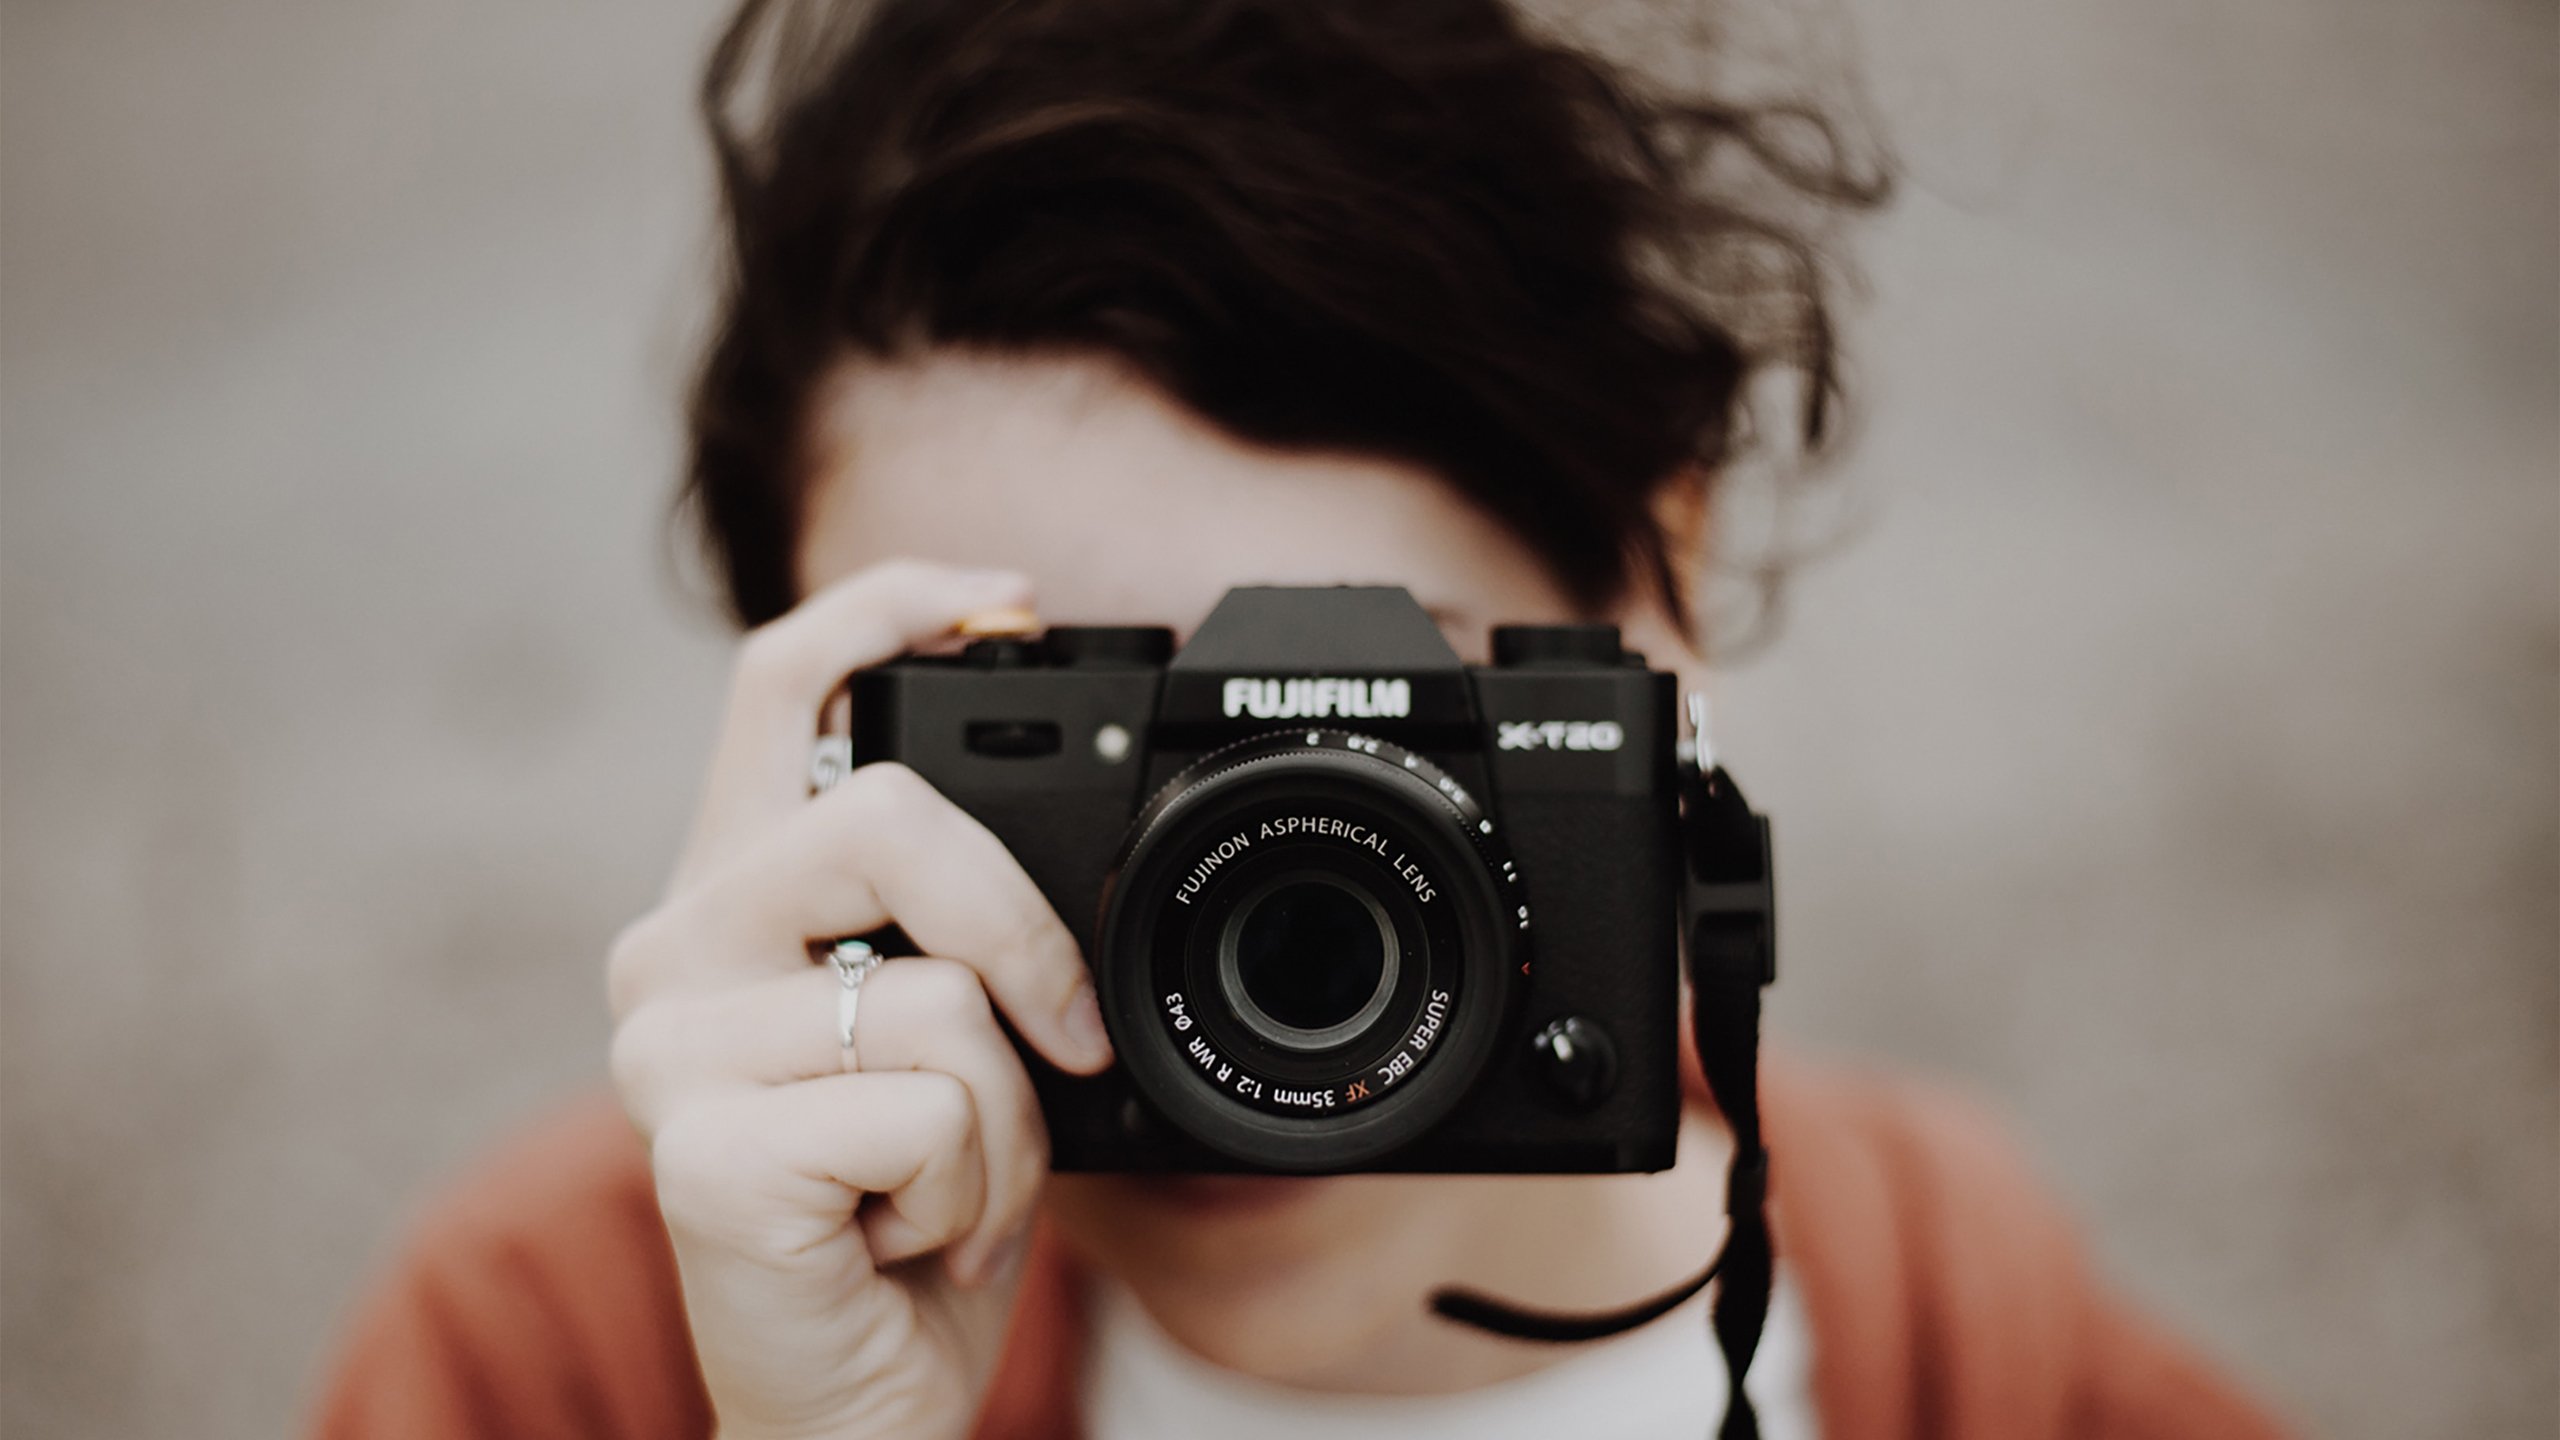 Fujifilm Camera 2560x1440